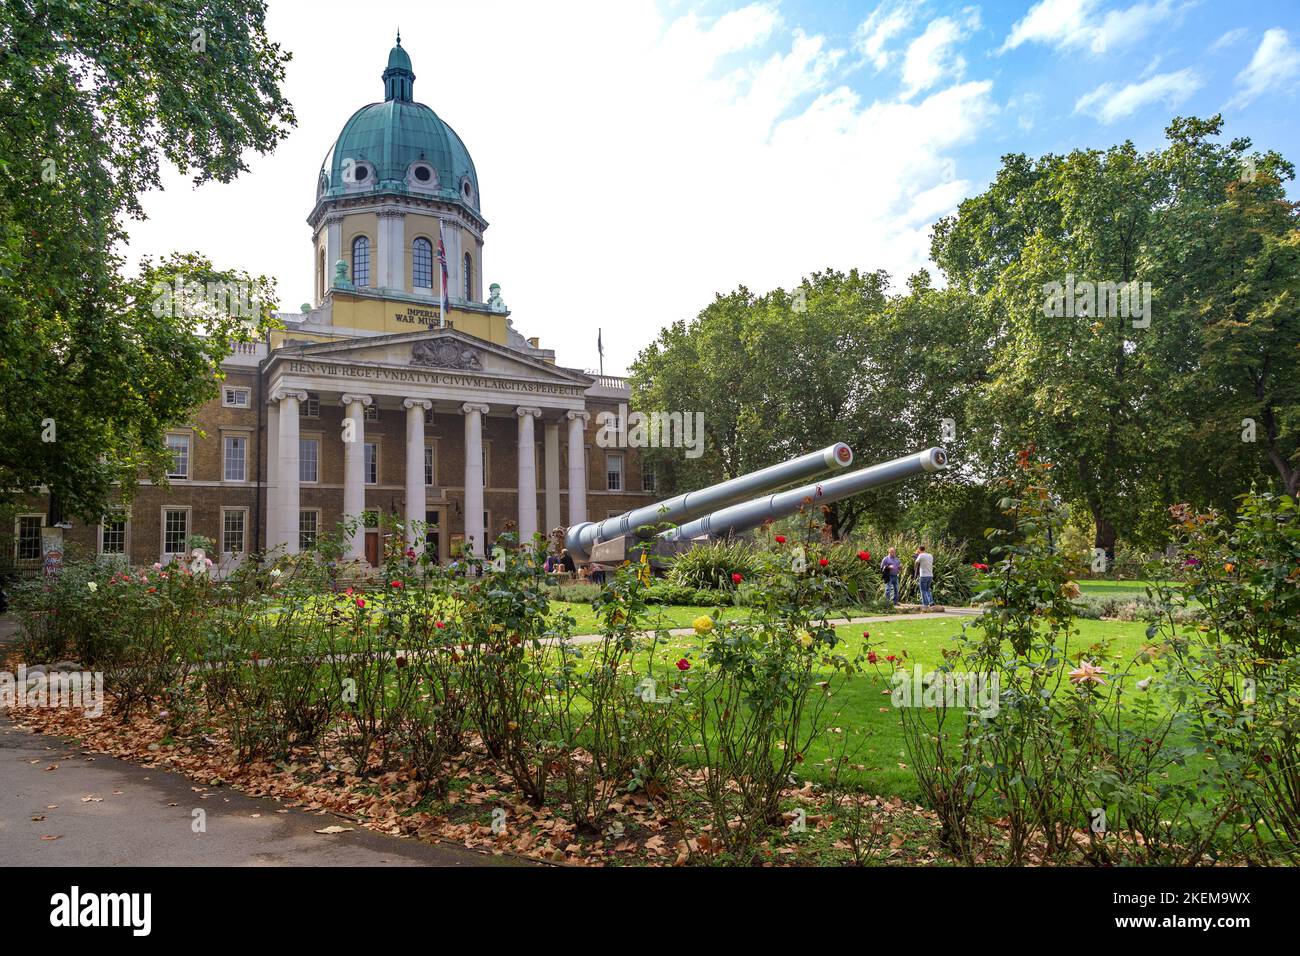 LONDRES, GRANDE-BRETAGNE - 19 SEPTEMBRE 2014 : c'est la construction du Musée impérial de la guerre avec un canon naval installé à l'entrée Banque D'Images